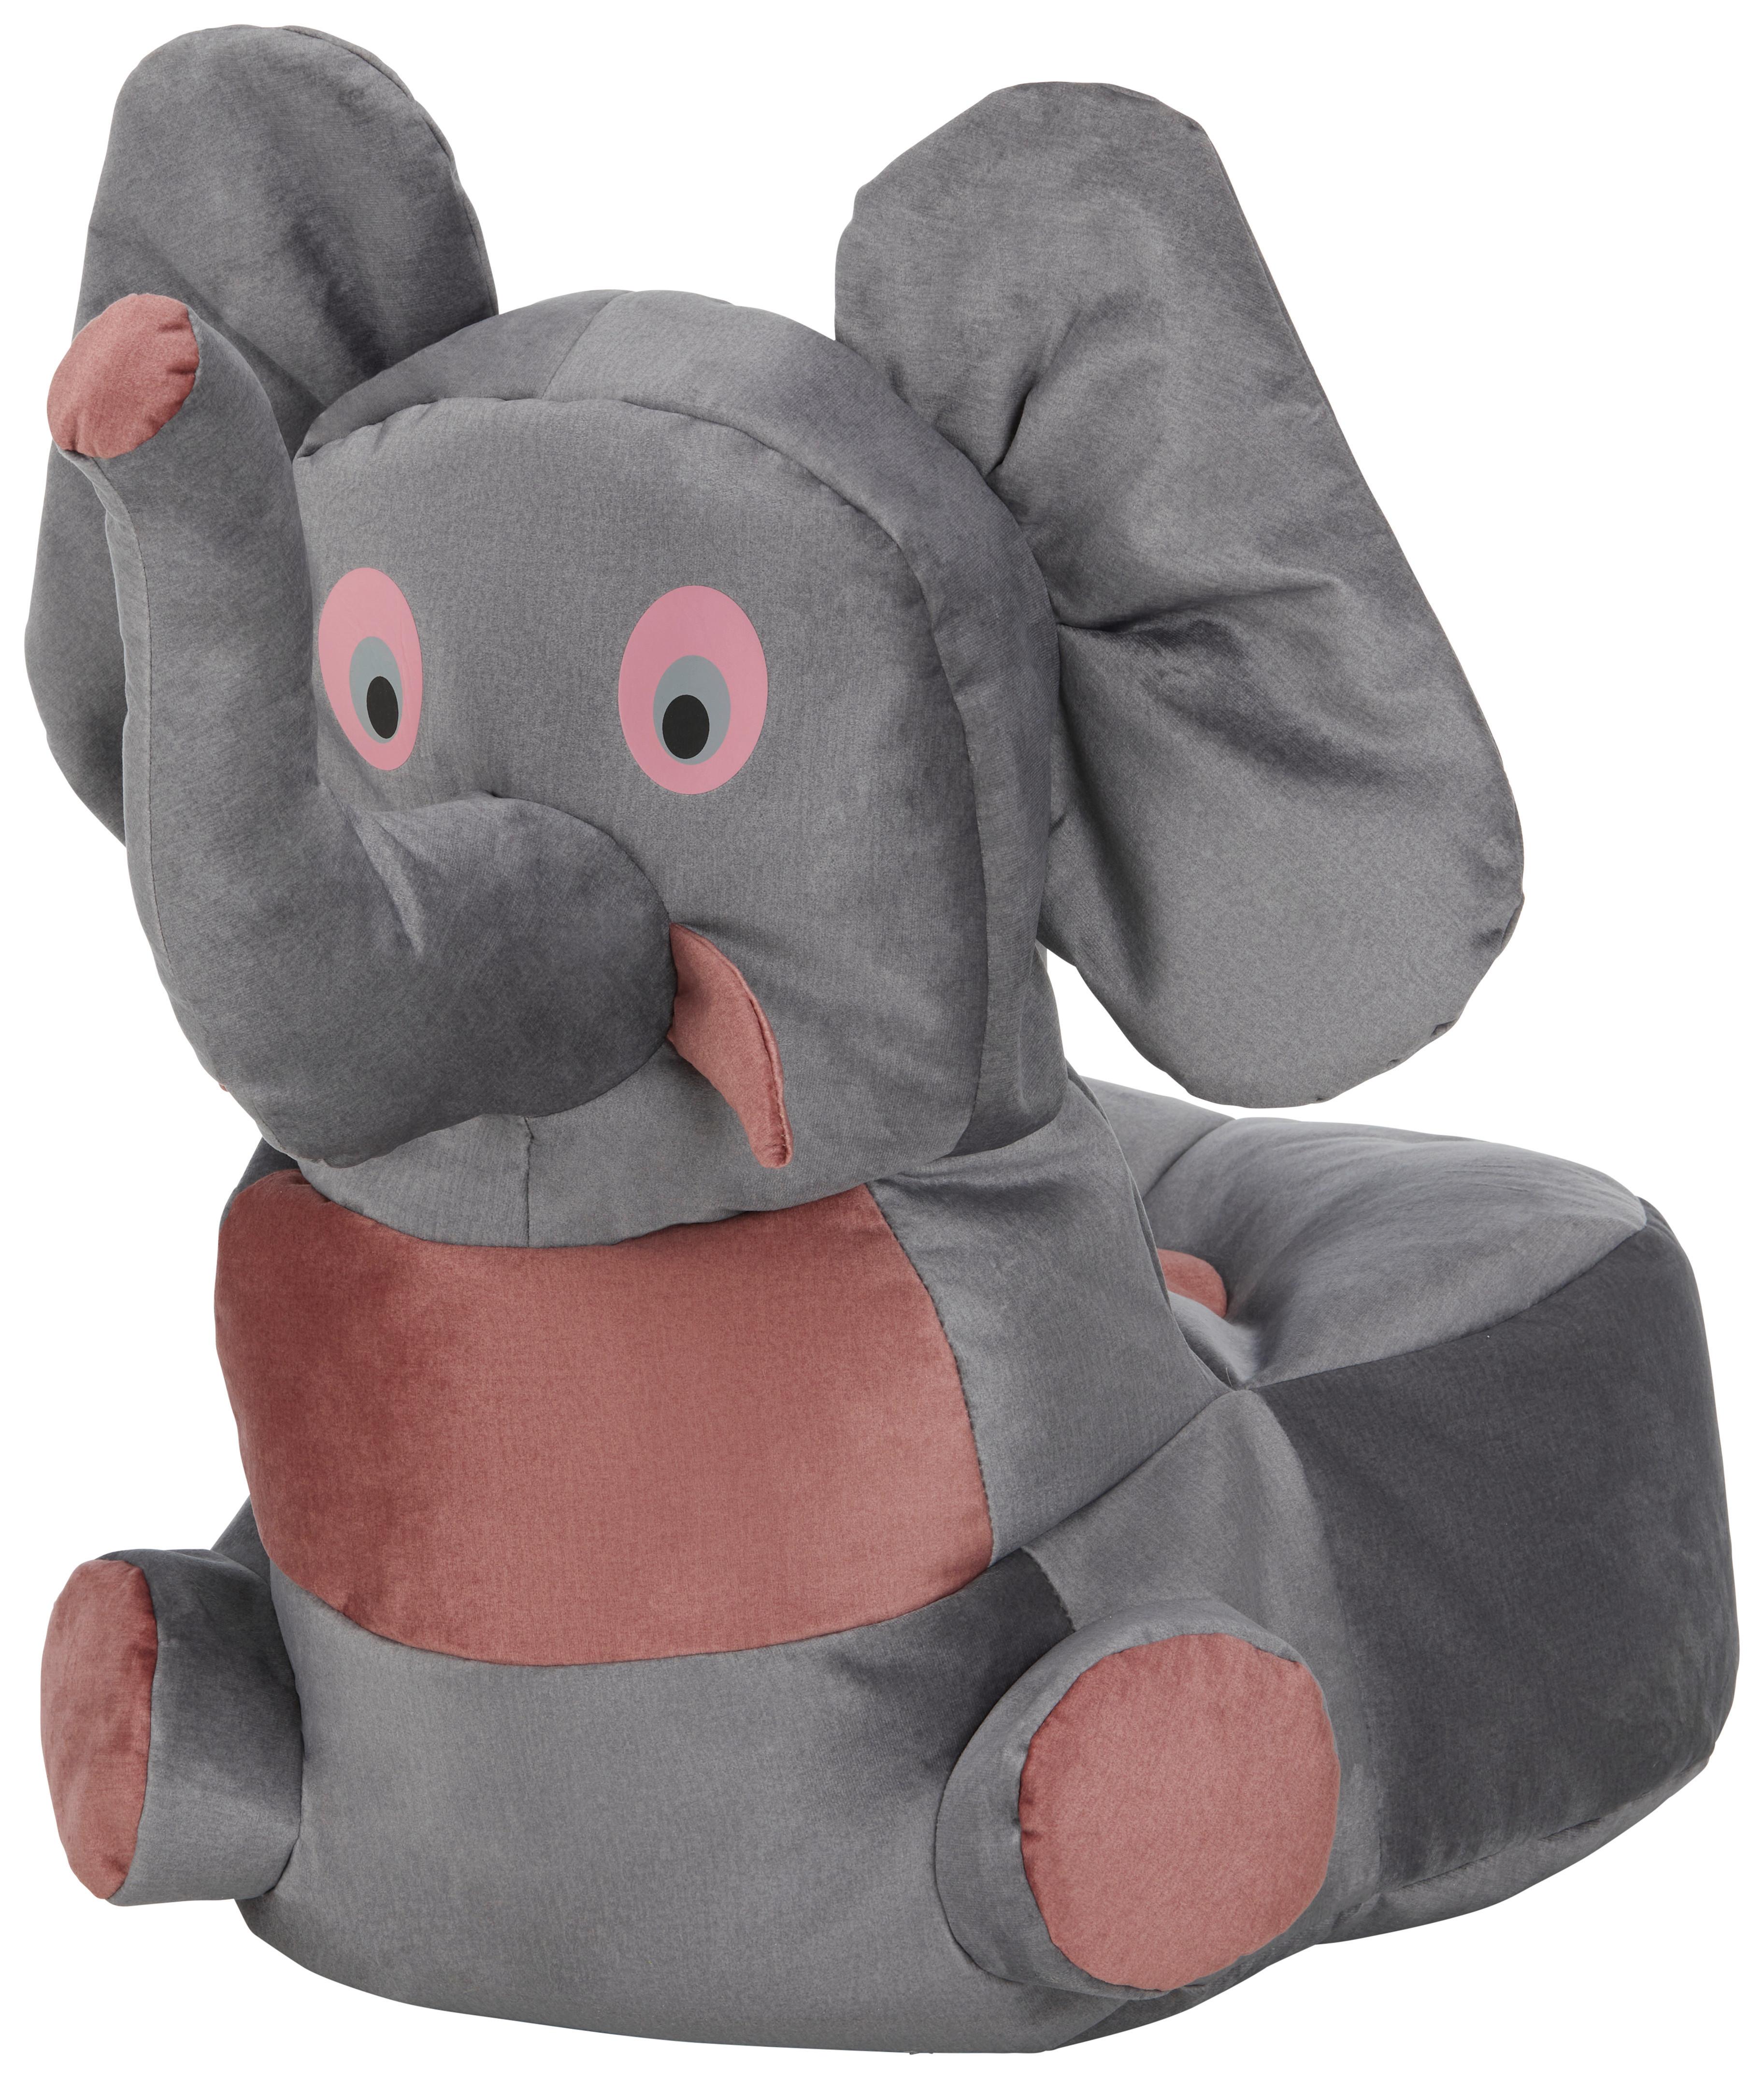 Dětský Sedací Vak Elephant - šedá/růžová, textil (55/80/75cm) - Modern Living